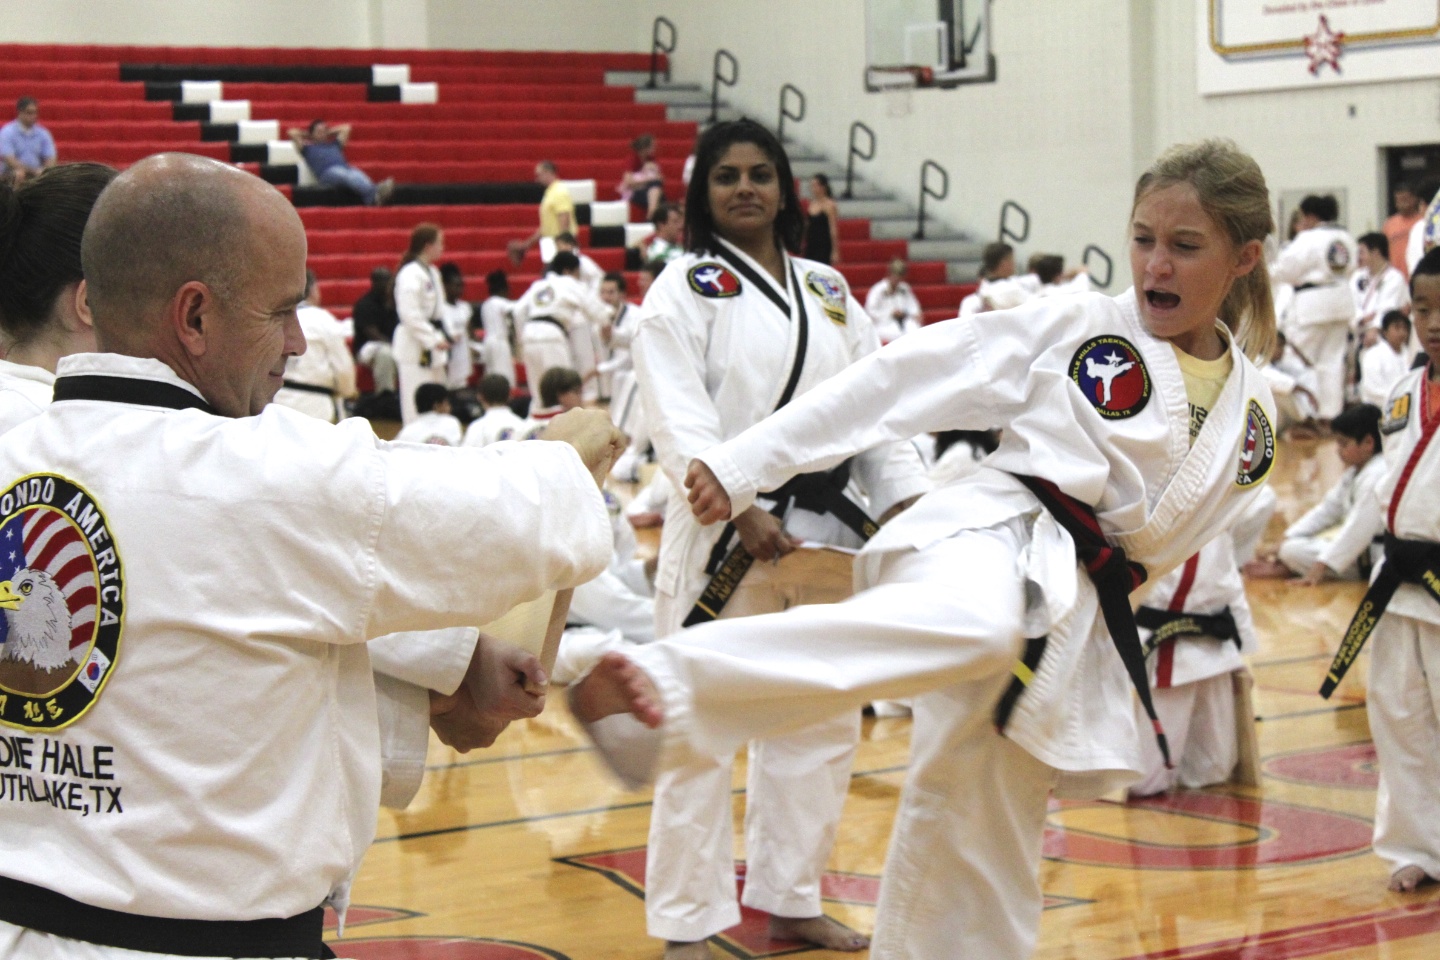 Martial Arts Students Greensboro NC